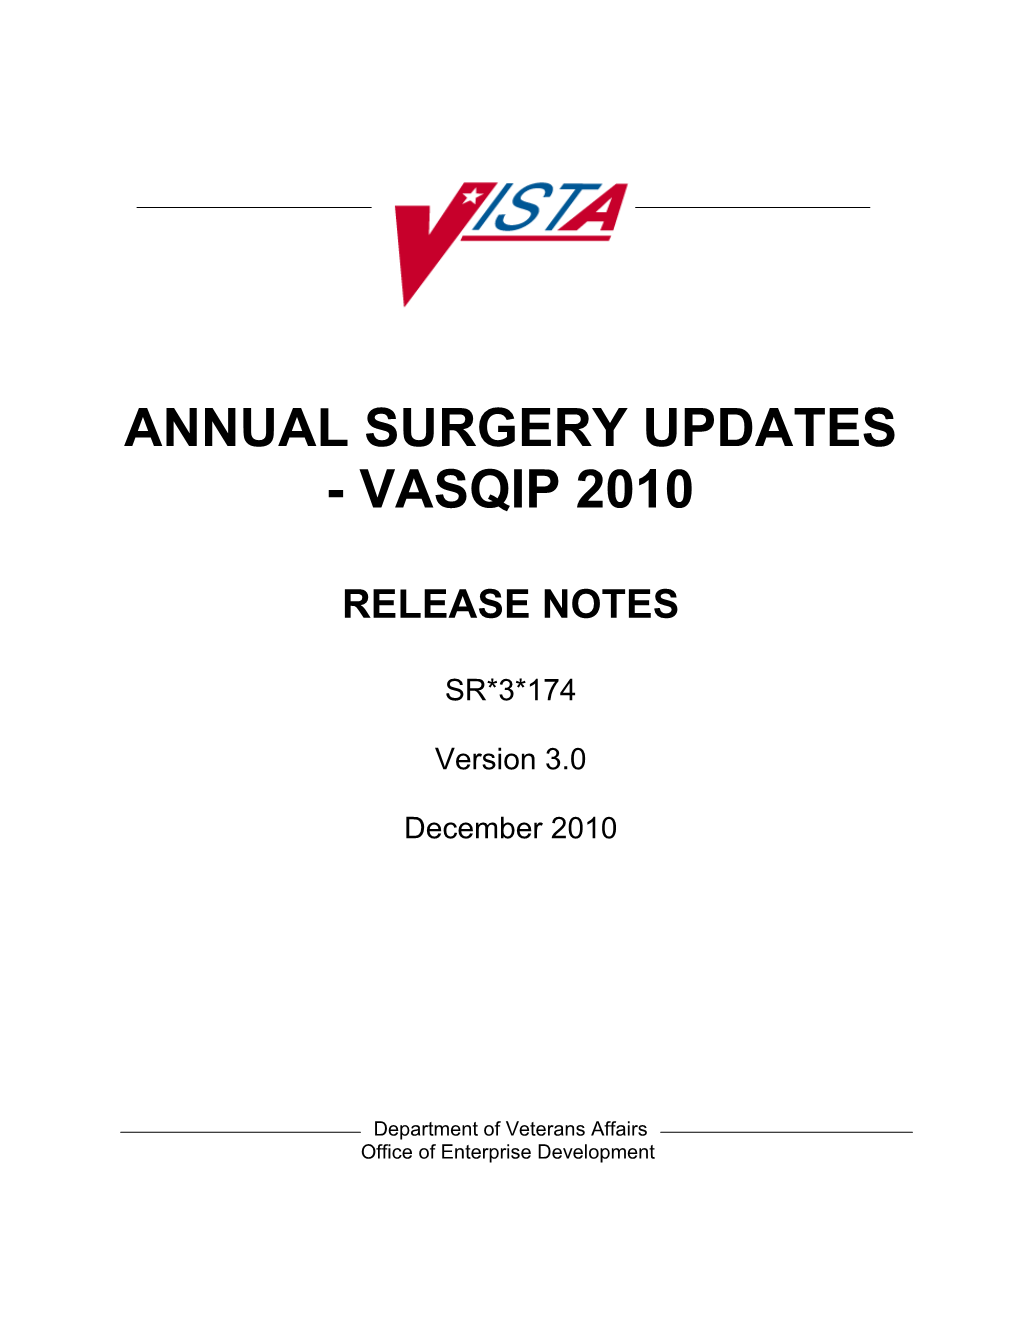 ANNUAL Surgery UPDATES - VASQIP 2010